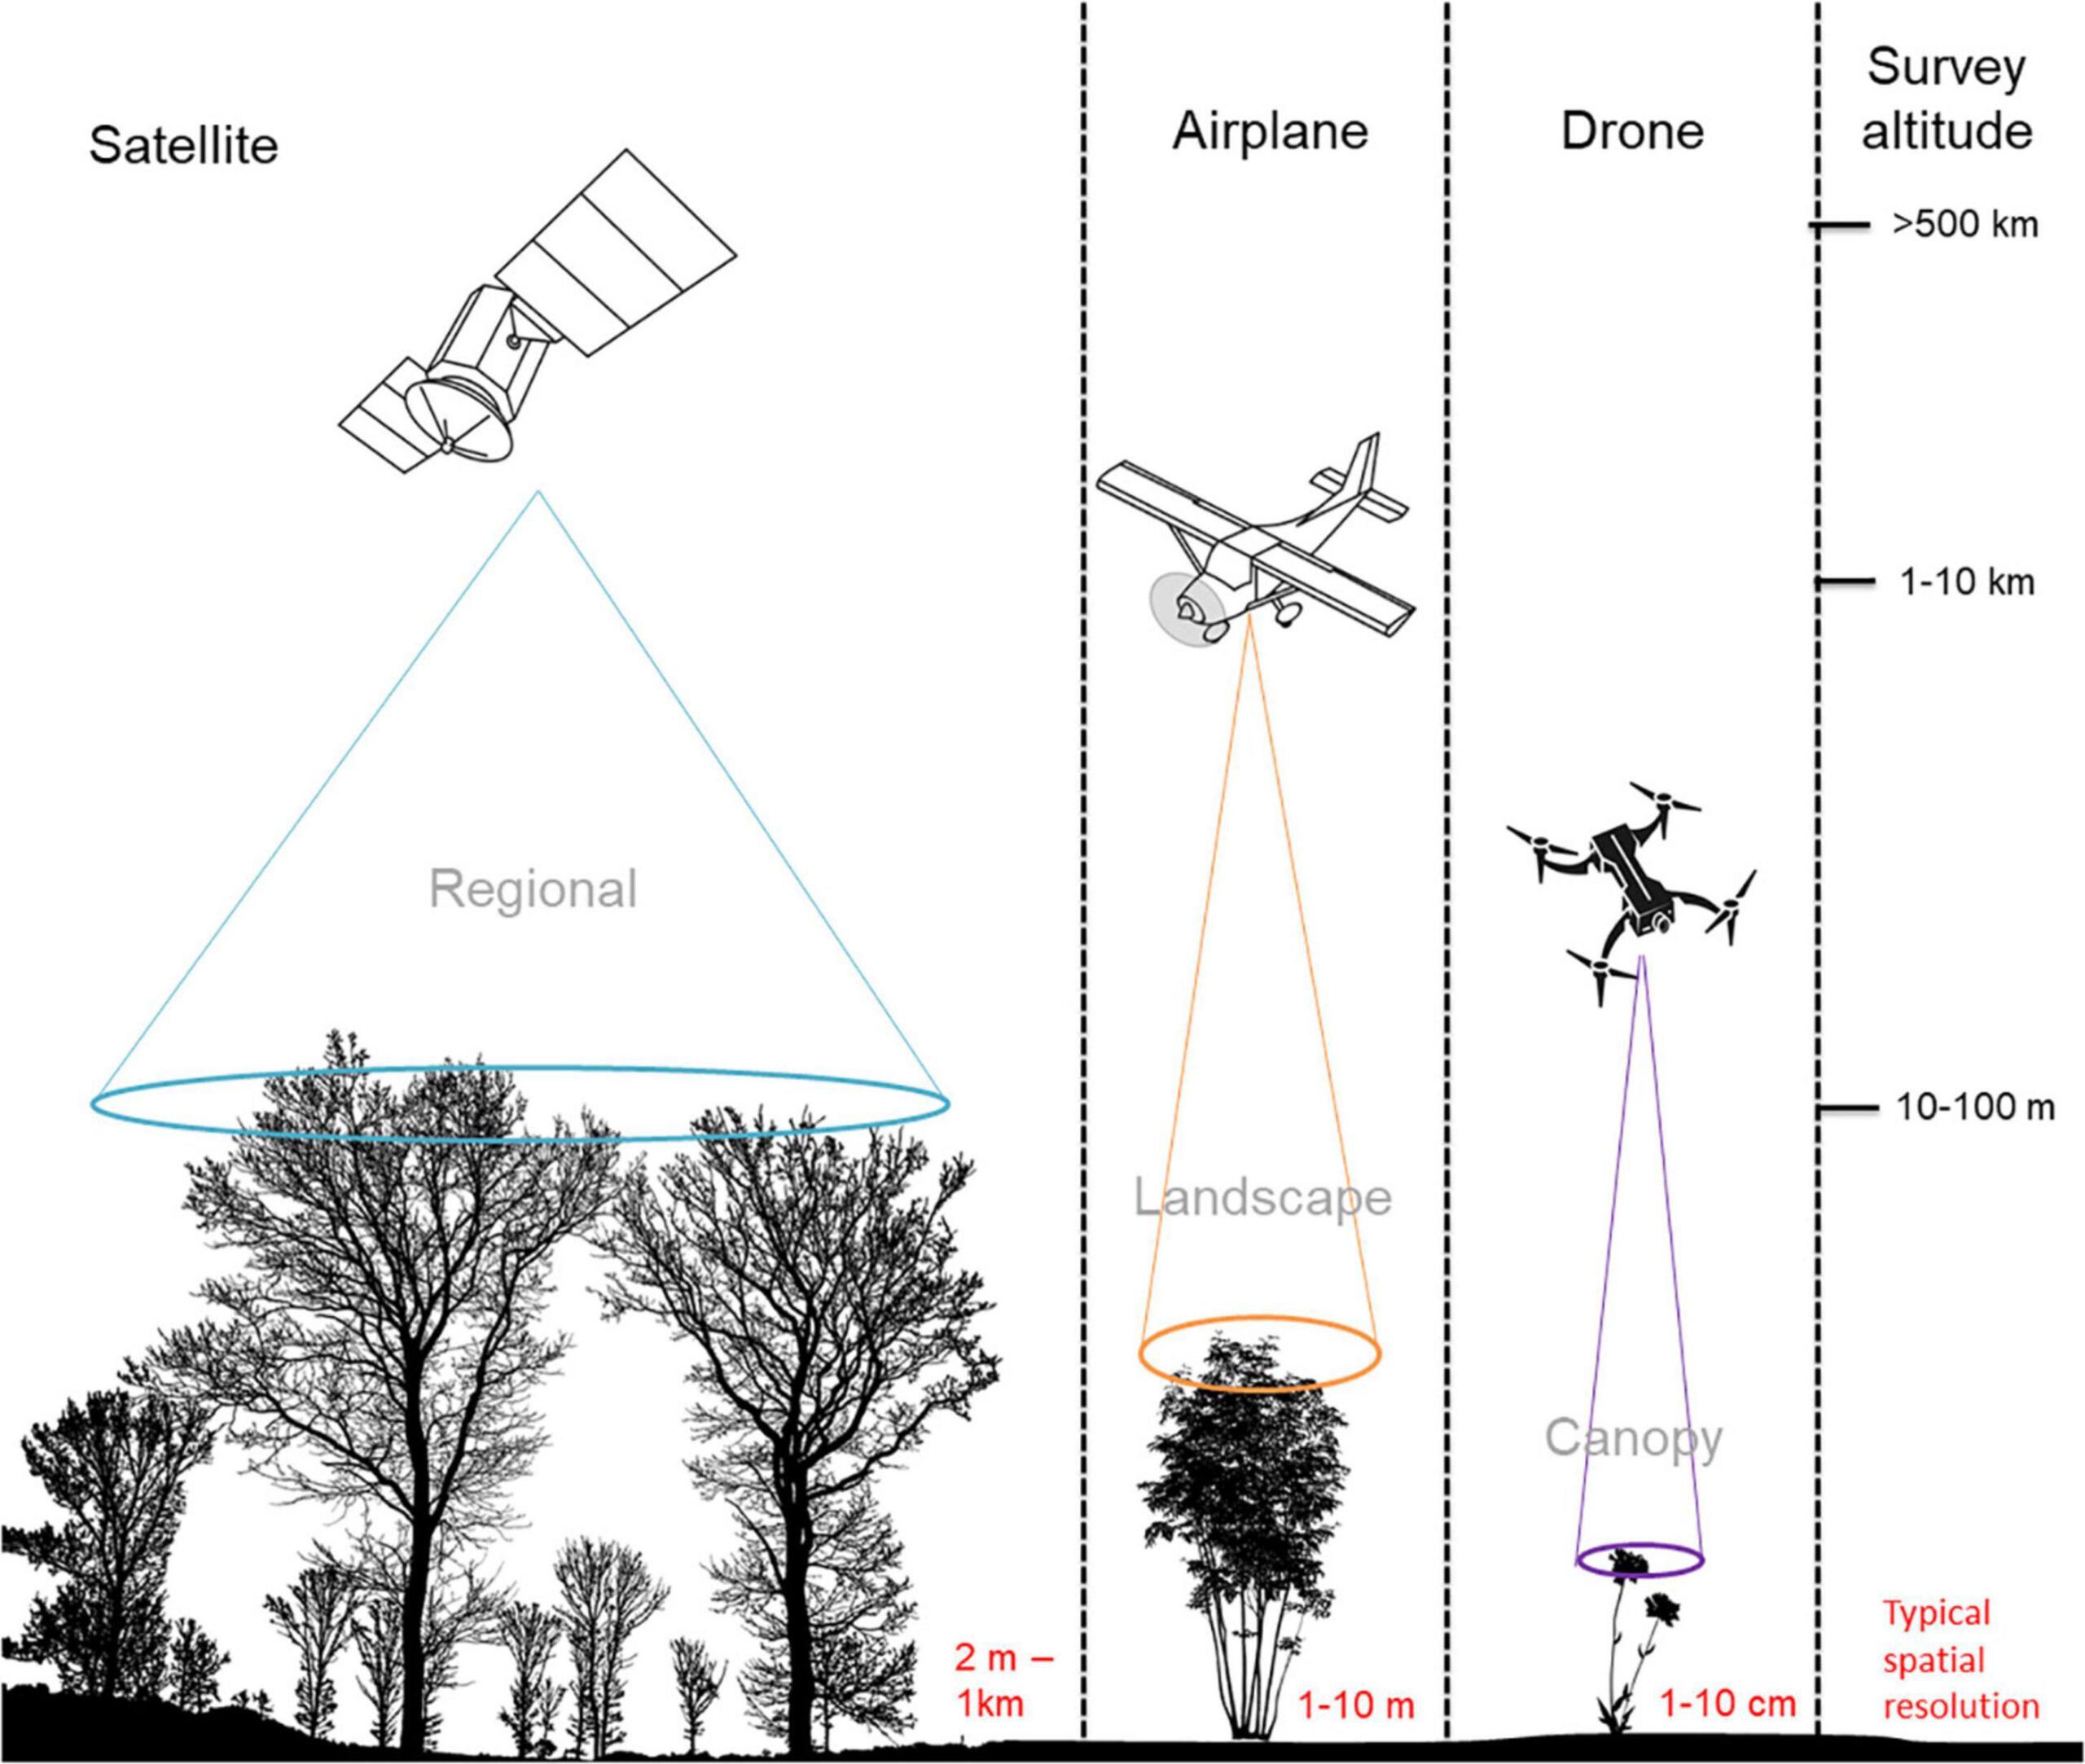 האמצעים לסקירת שטחי חקלאות: לוויינים, מטוסי צילום, רחפנים. מתוך המחקר